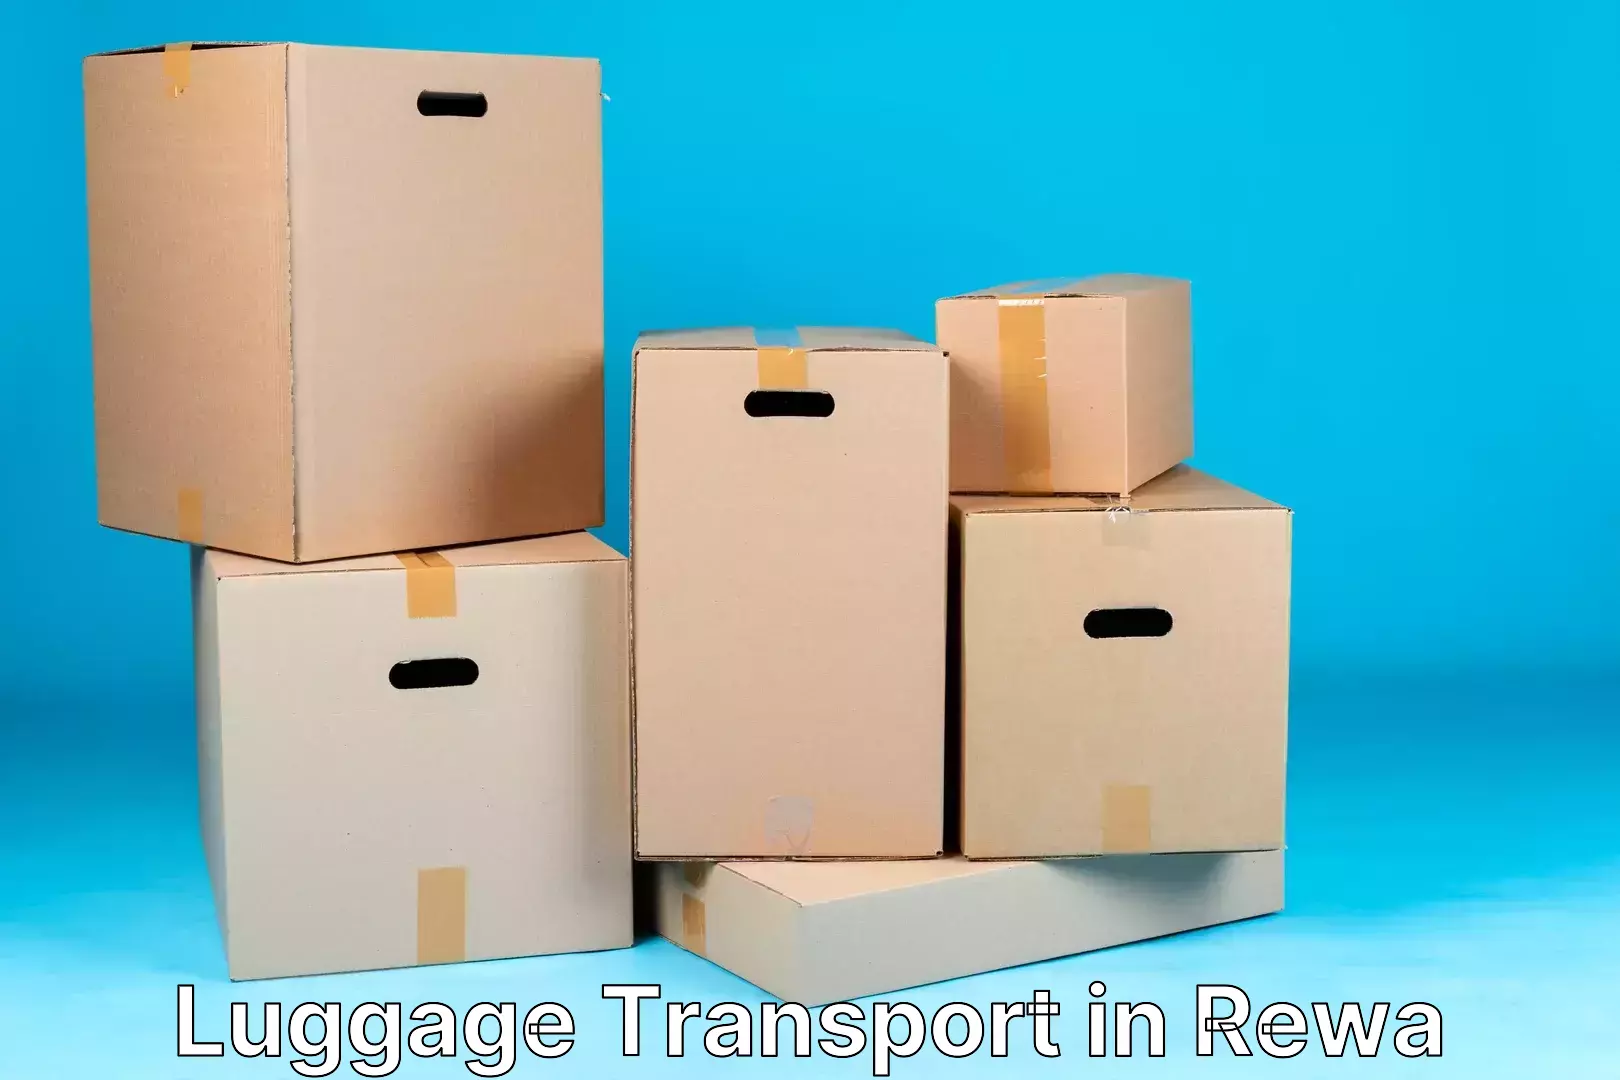 Premium luggage delivery in Rewa